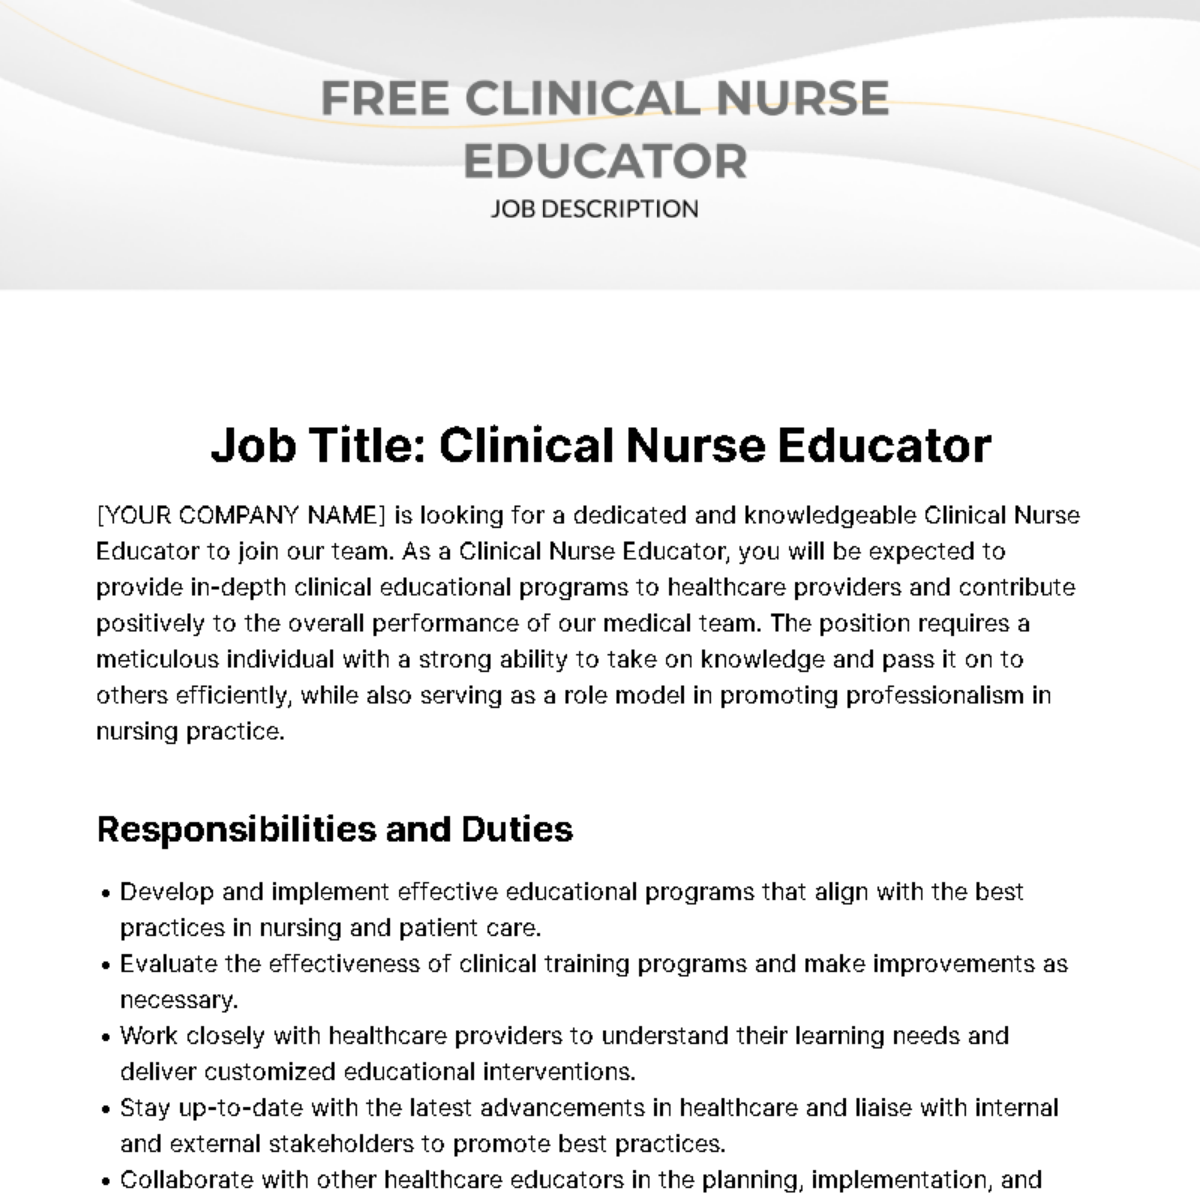 Clinical Nurse Educator Job Description Template